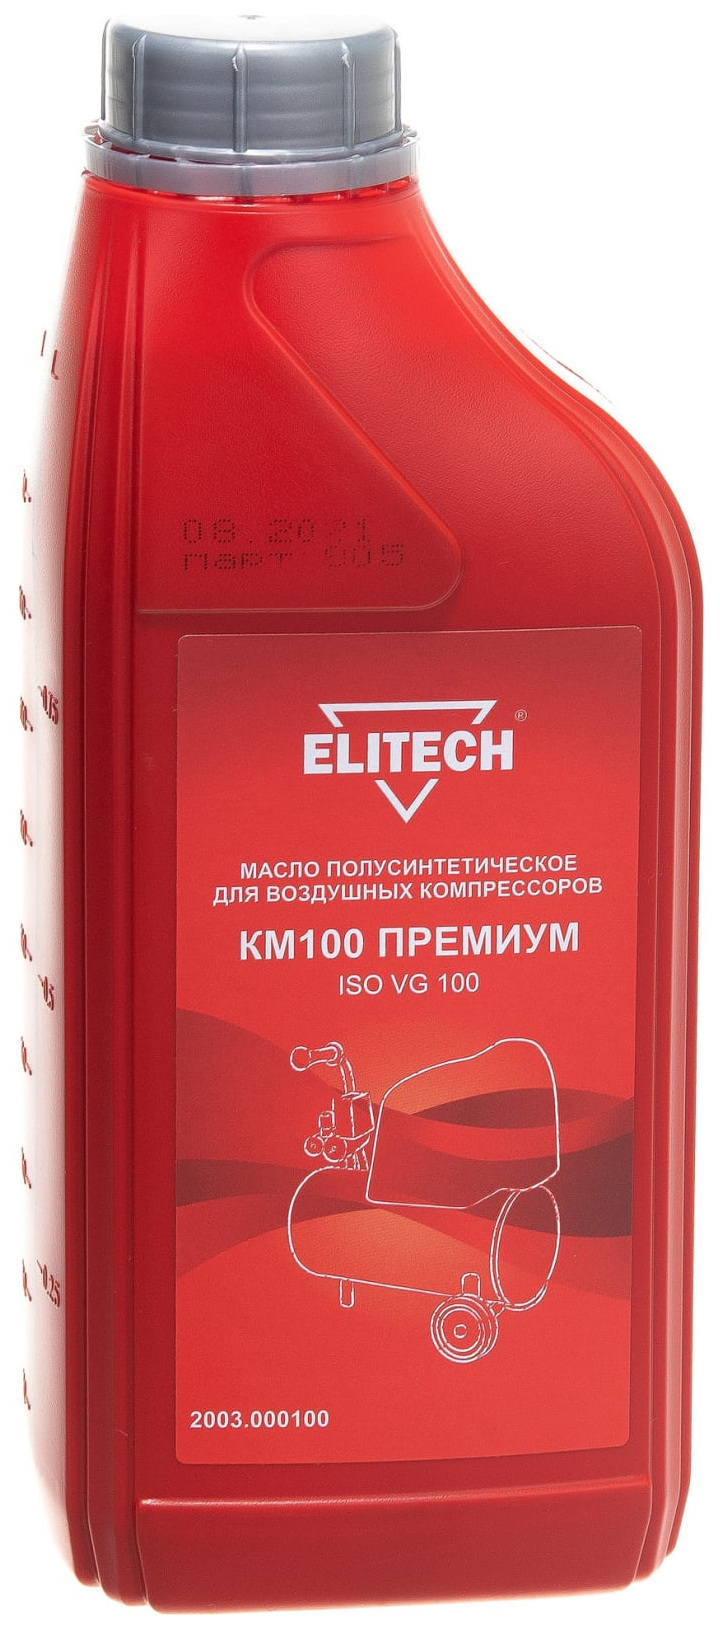 Масло полусинтетическое КМ100 (1 л) для воздушных компрессоров Elitech 2003.000100